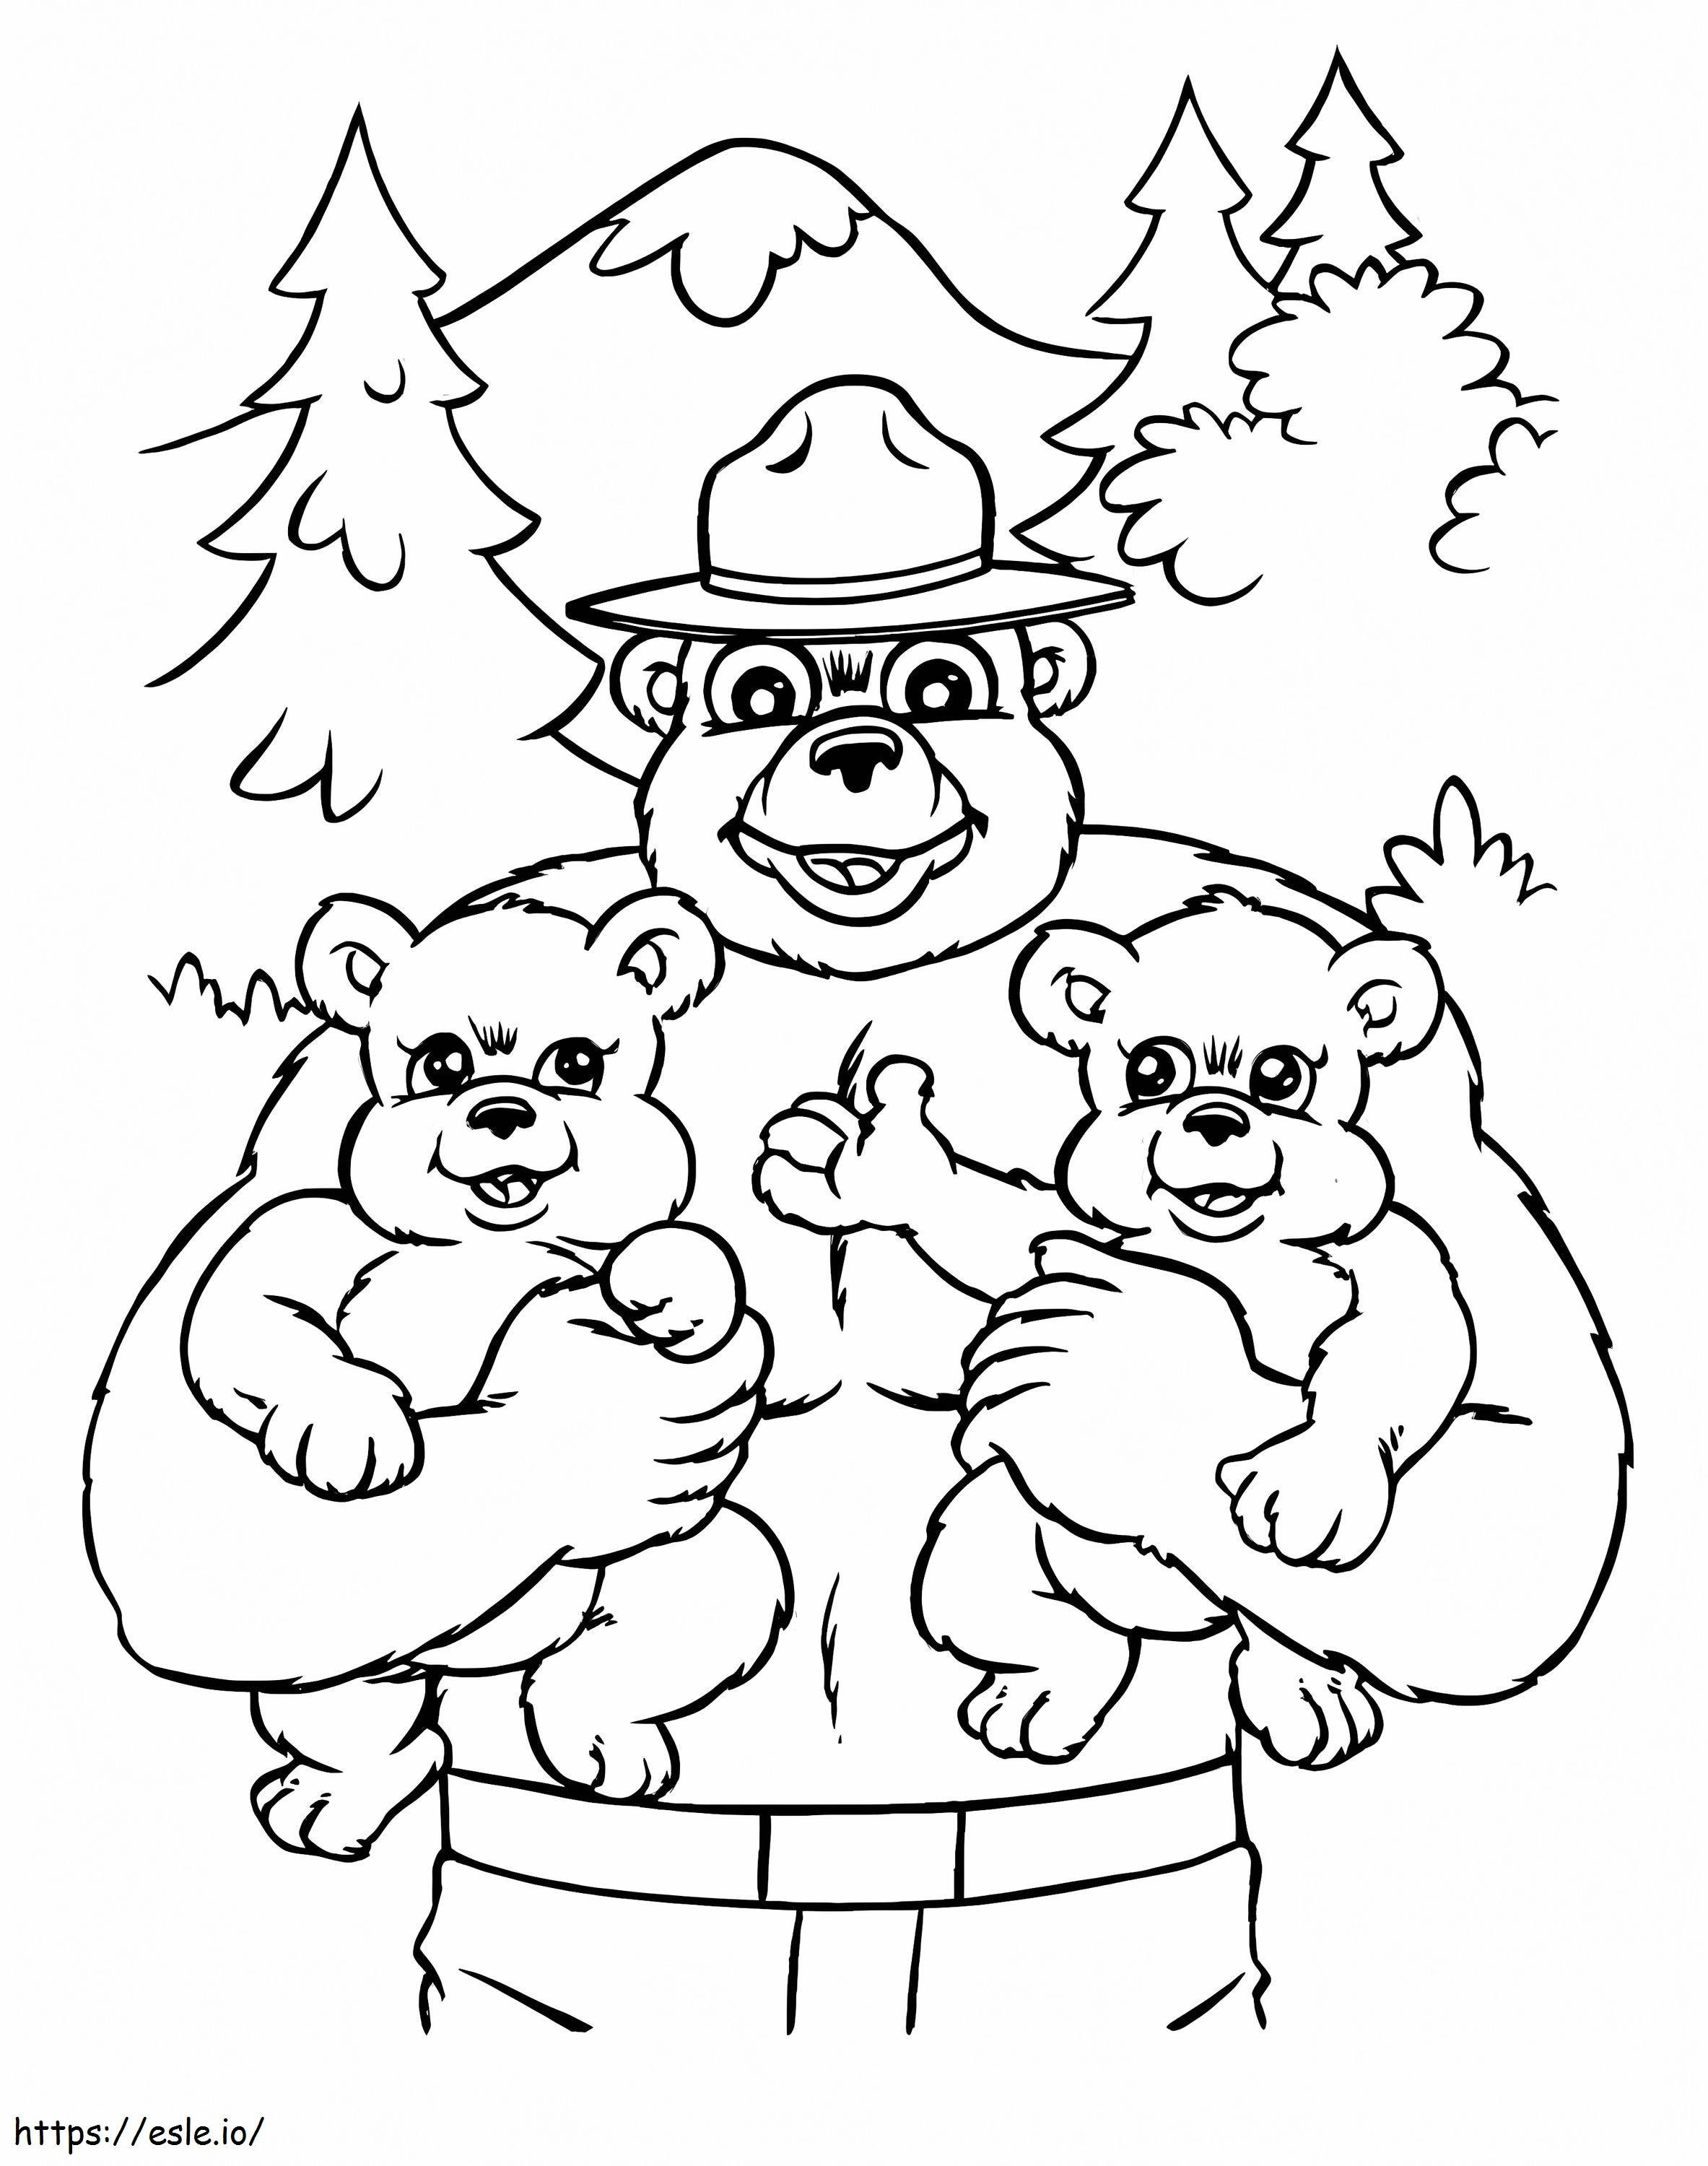 Urso Esfumaçado e Dois Ursinhos para colorir